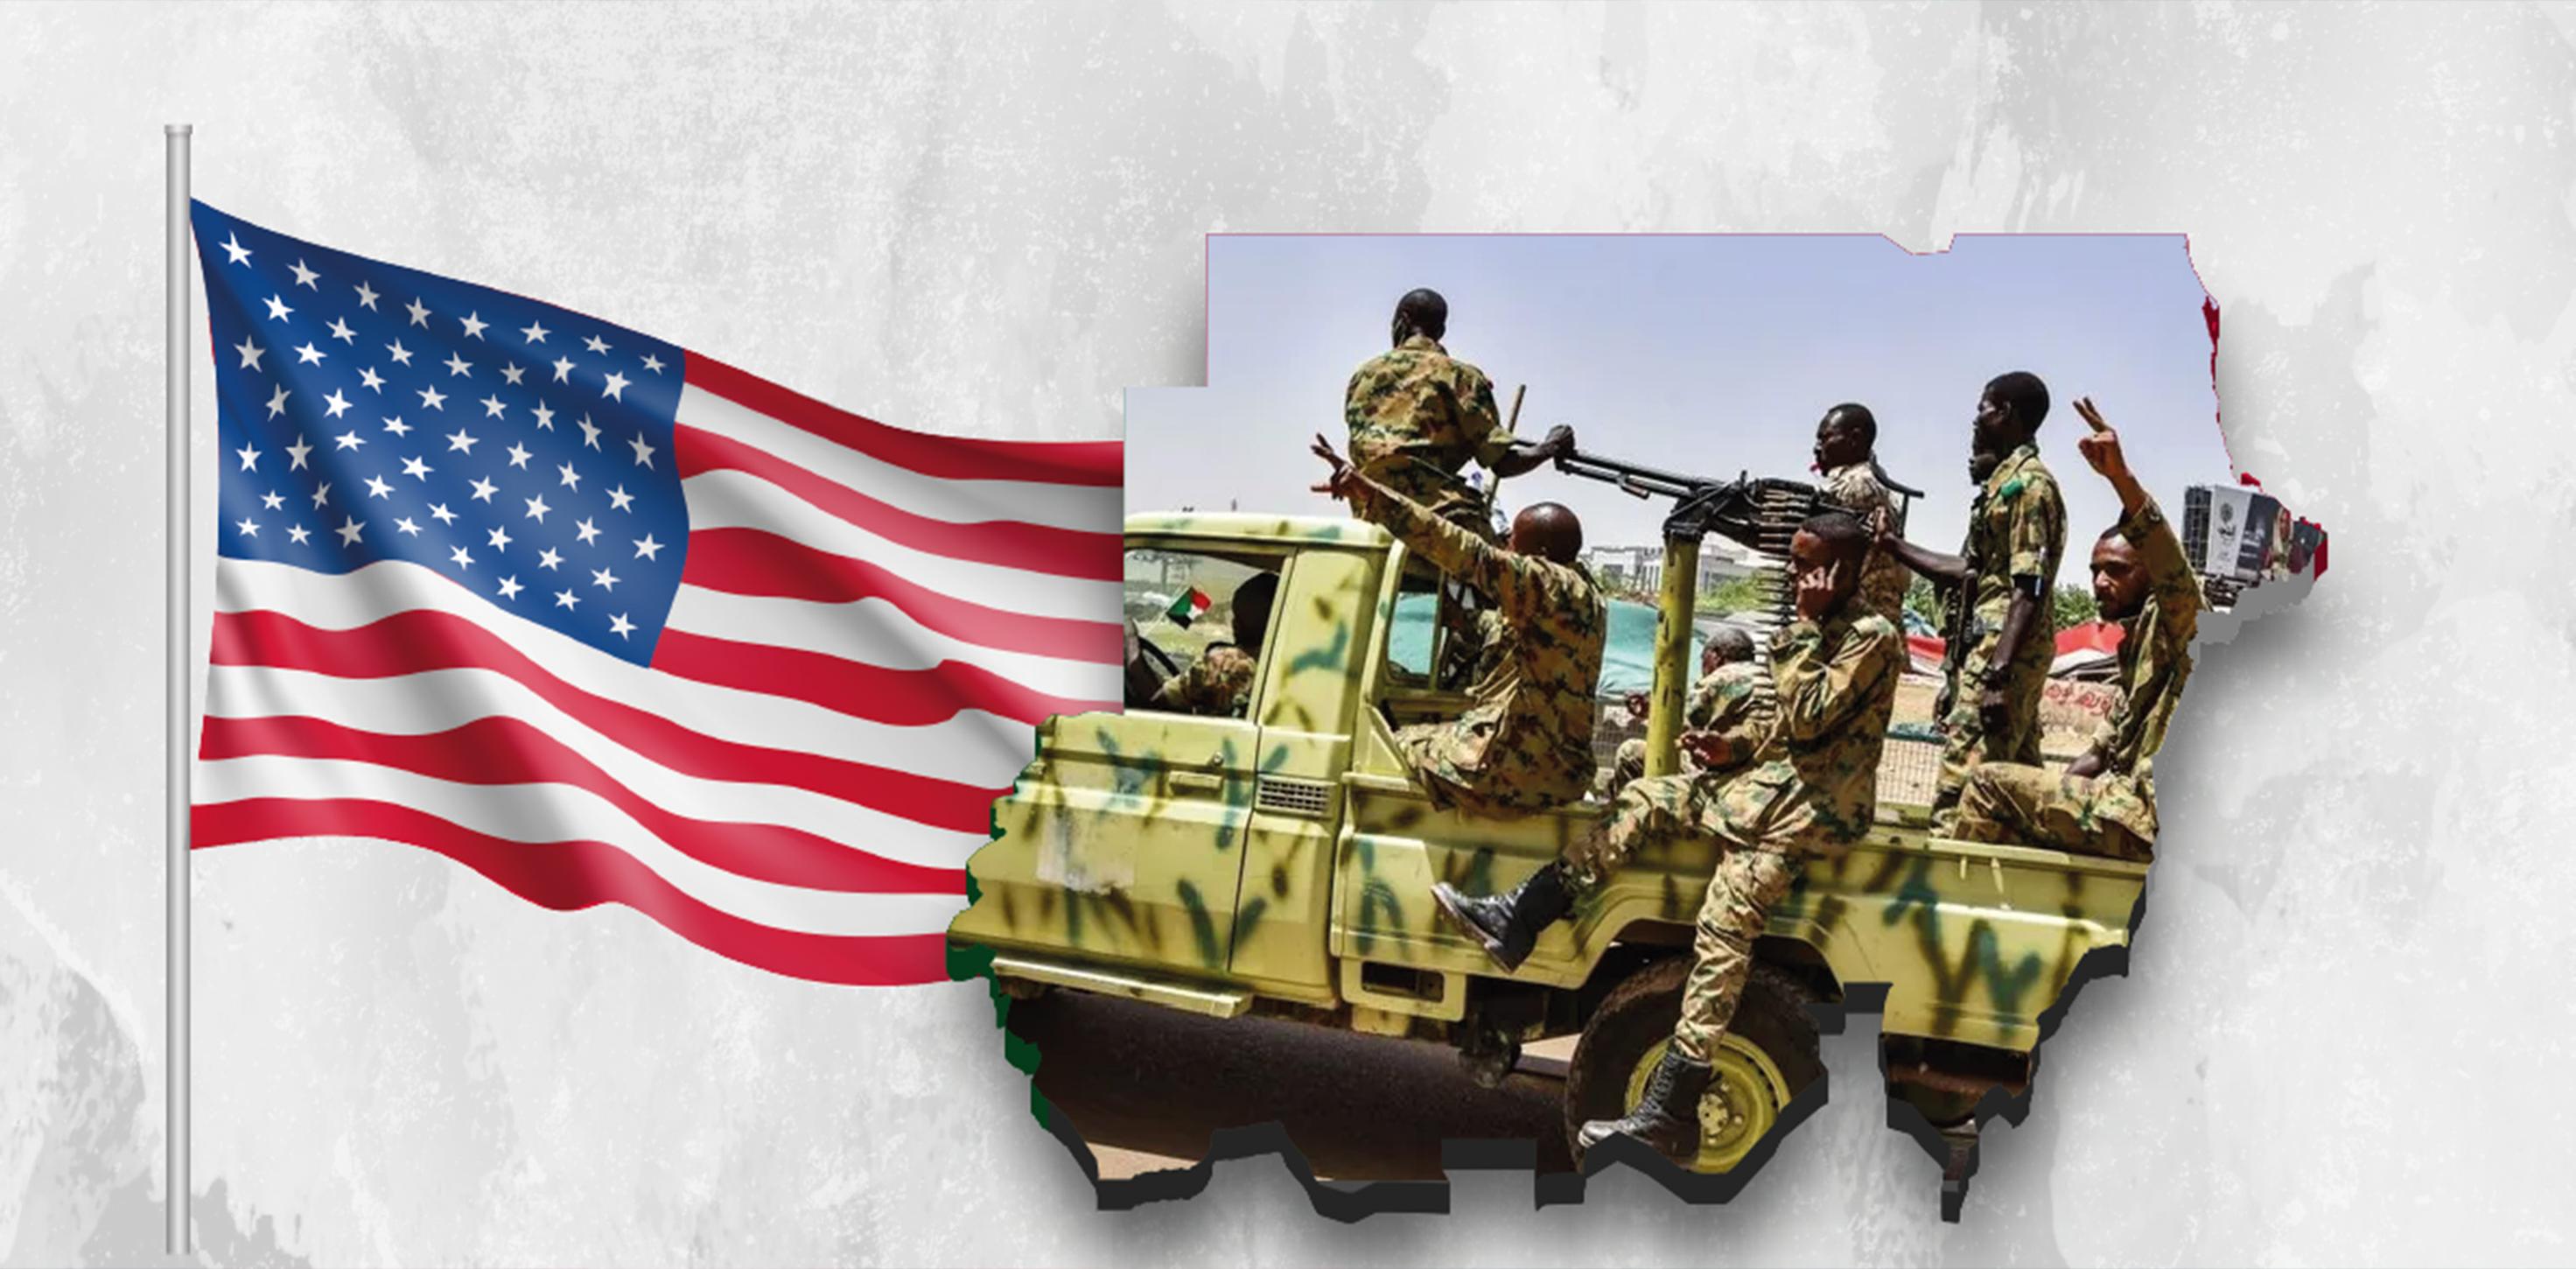 كيف تتفاعل واشنطن مع تطورات الأزمة السودانية؟